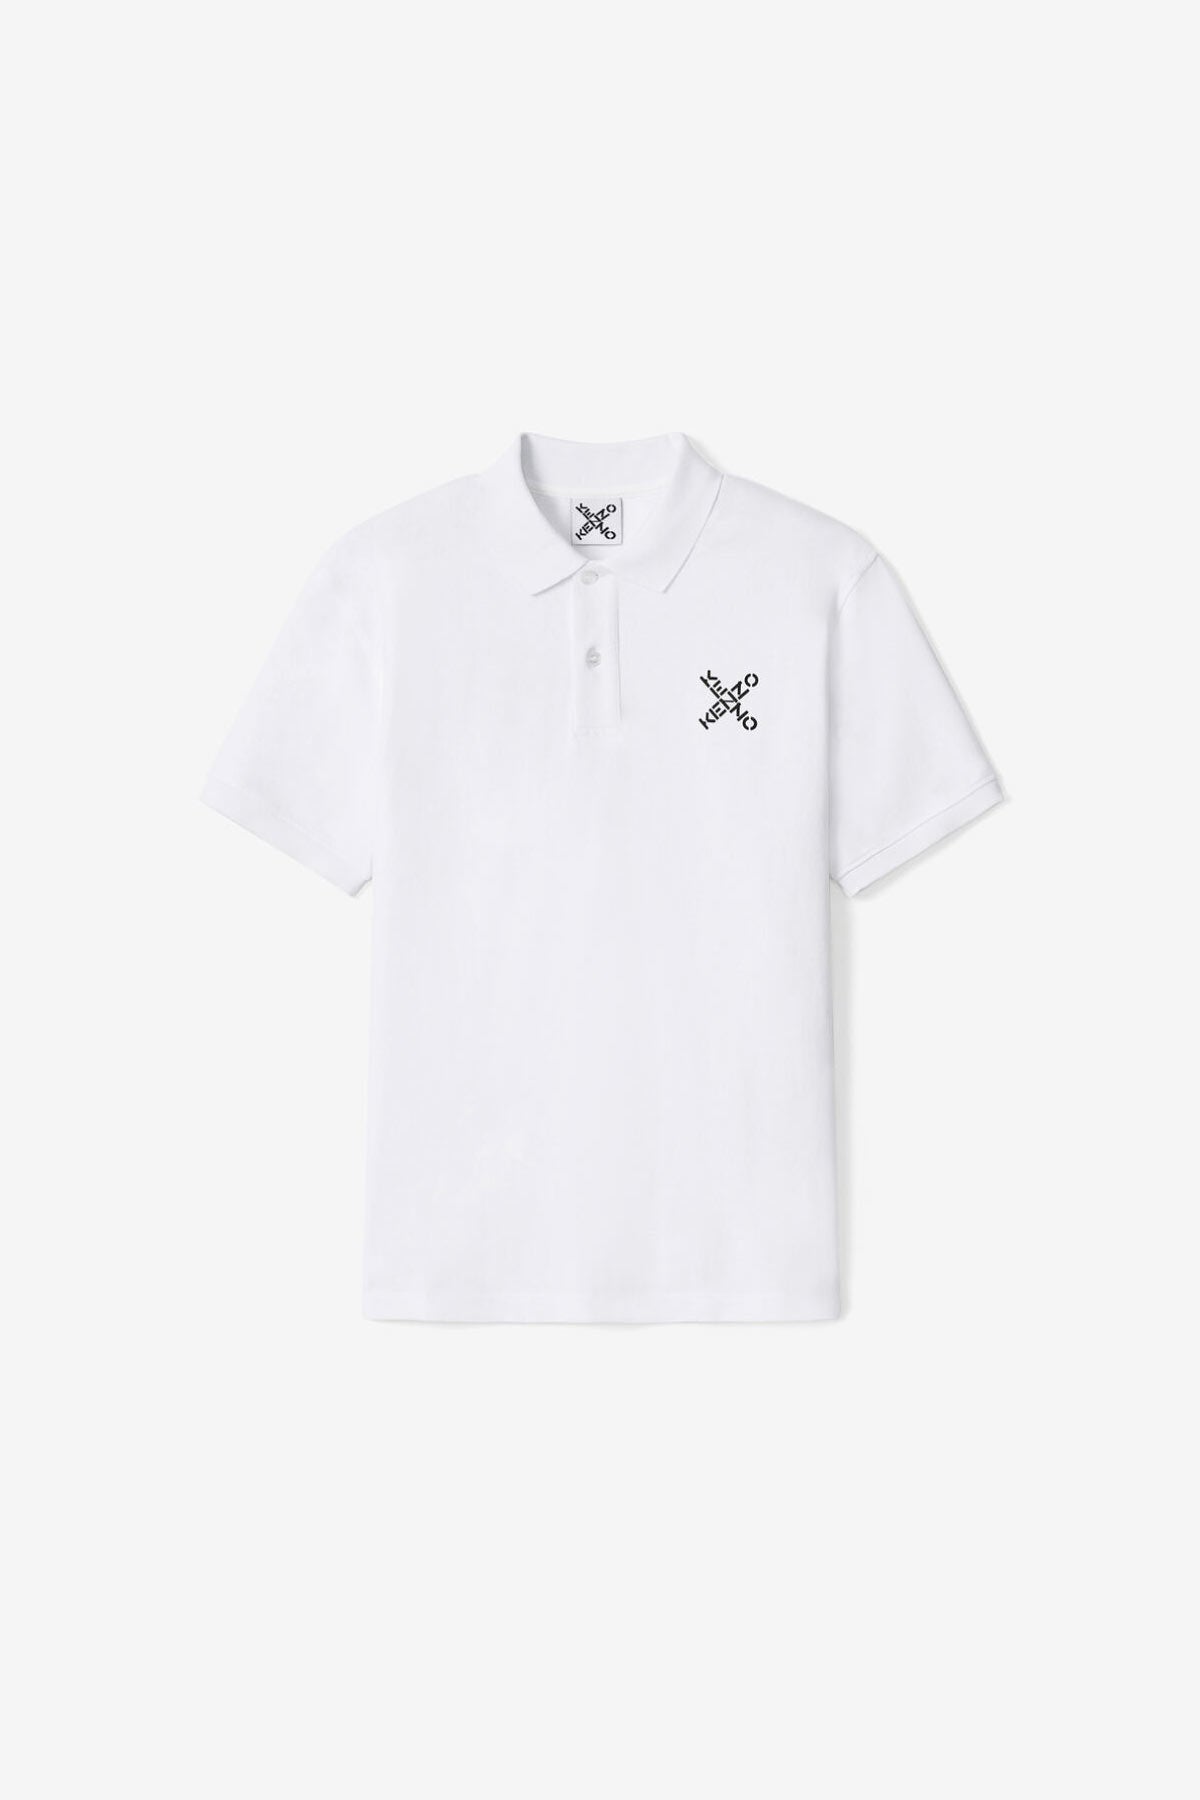 Kenzo Sport Polo Yaka T-shirt-Libas Trendy Fashion Store